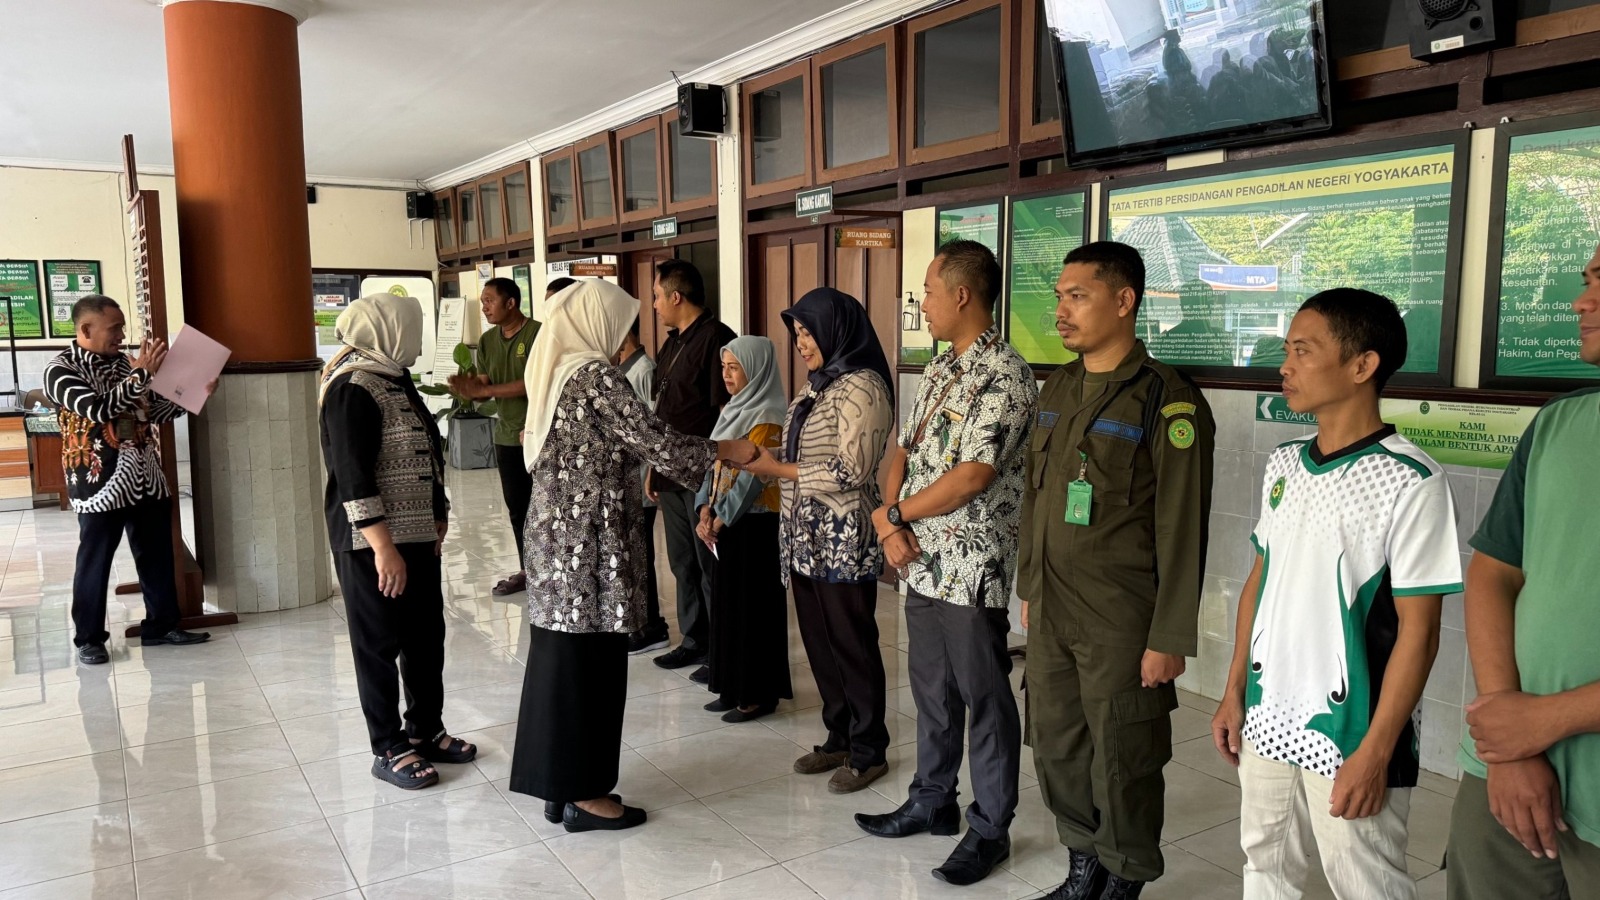 Sarapan bersama Rutin Pengadilan Negeri Yogyakarta